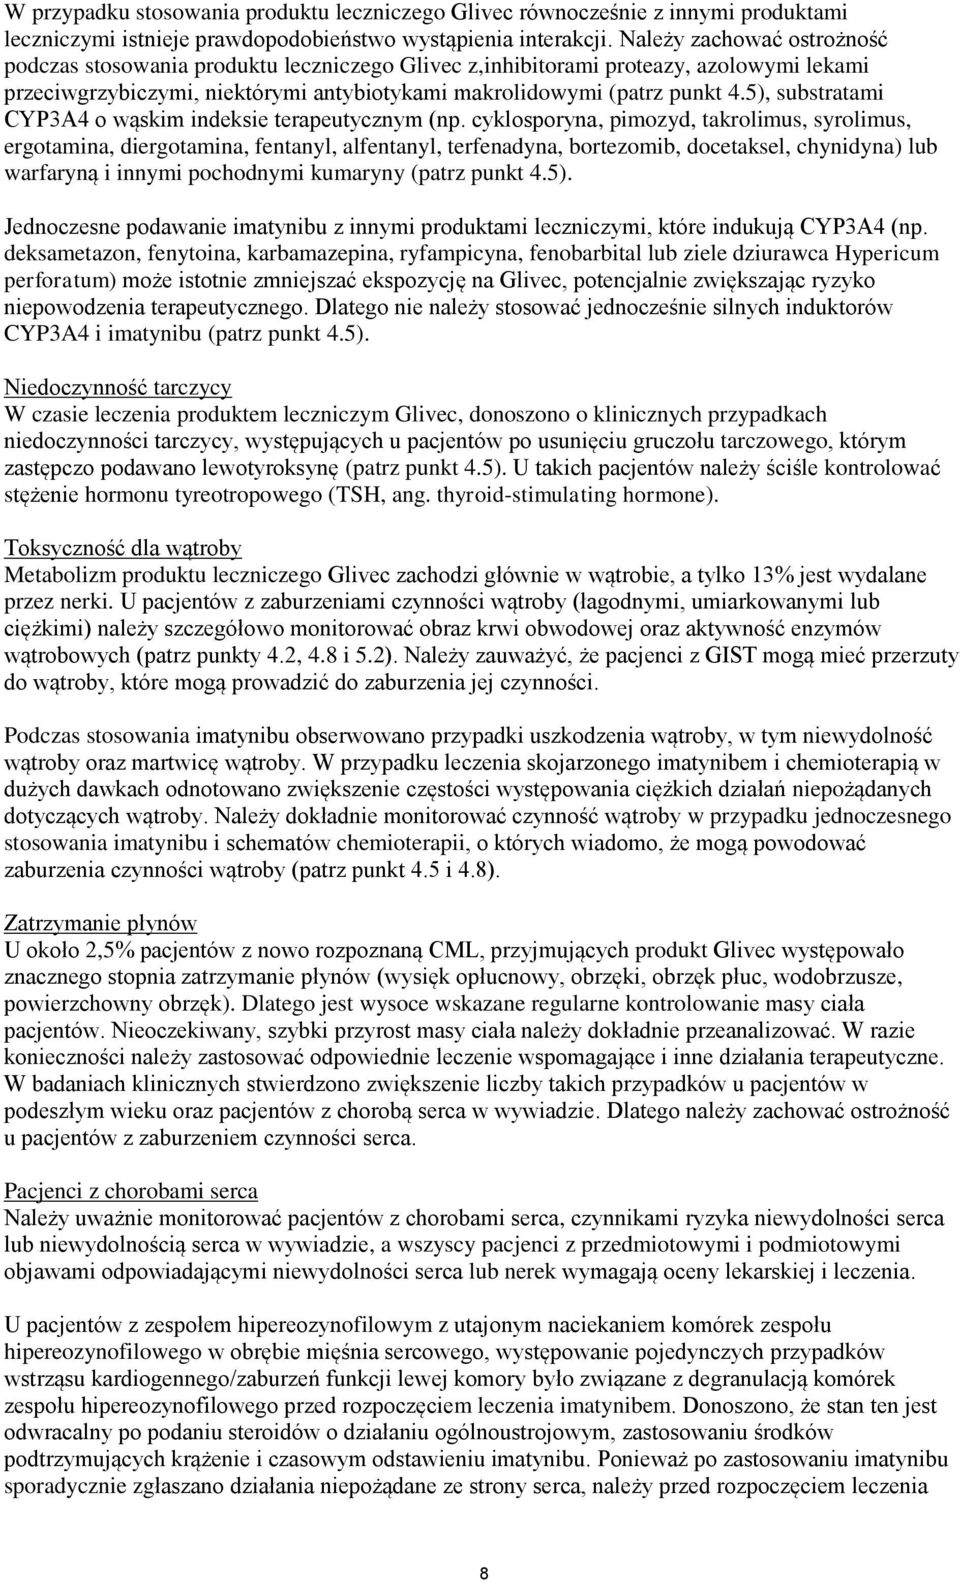 5), substratami CYP3A4 o wąskim indeksie terapeutycznym (np.